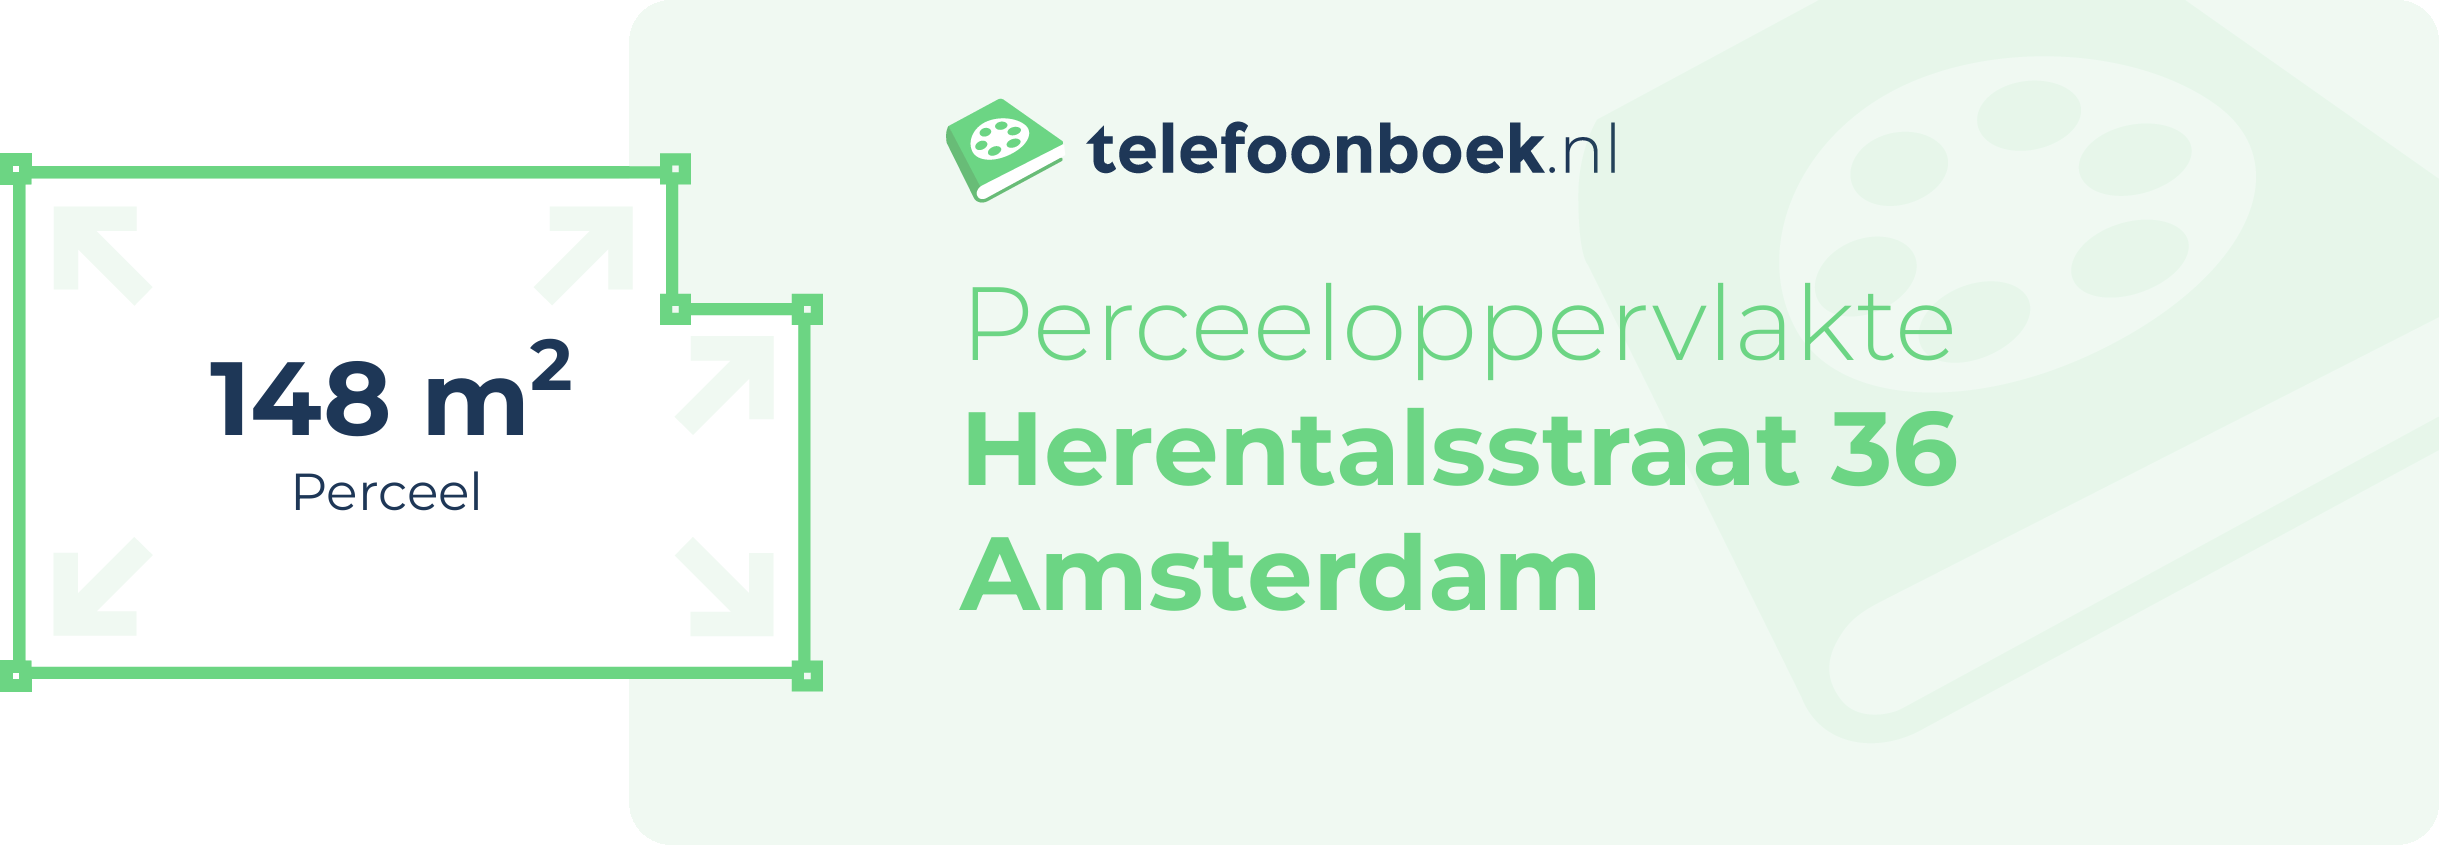 Perceeloppervlakte Herentalsstraat 36 Amsterdam